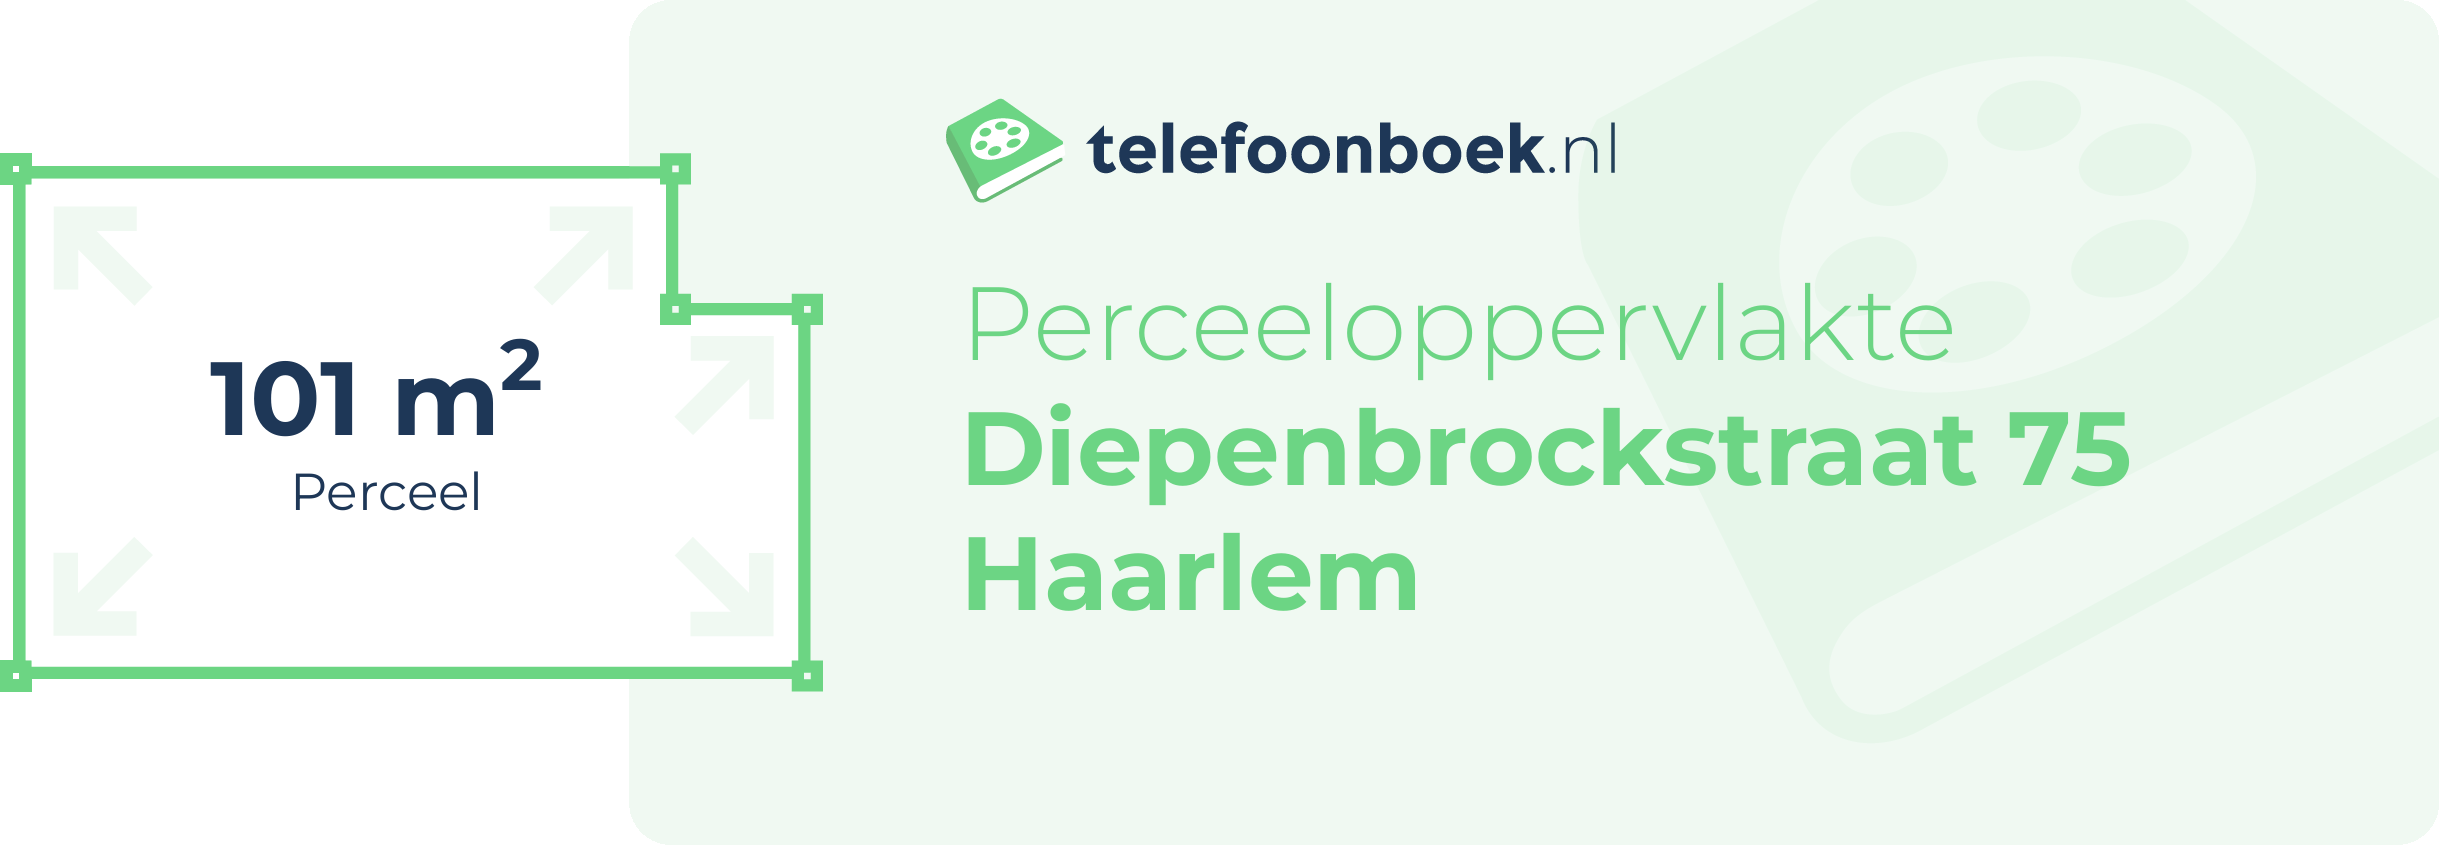 Perceeloppervlakte Diepenbrockstraat 75 Haarlem